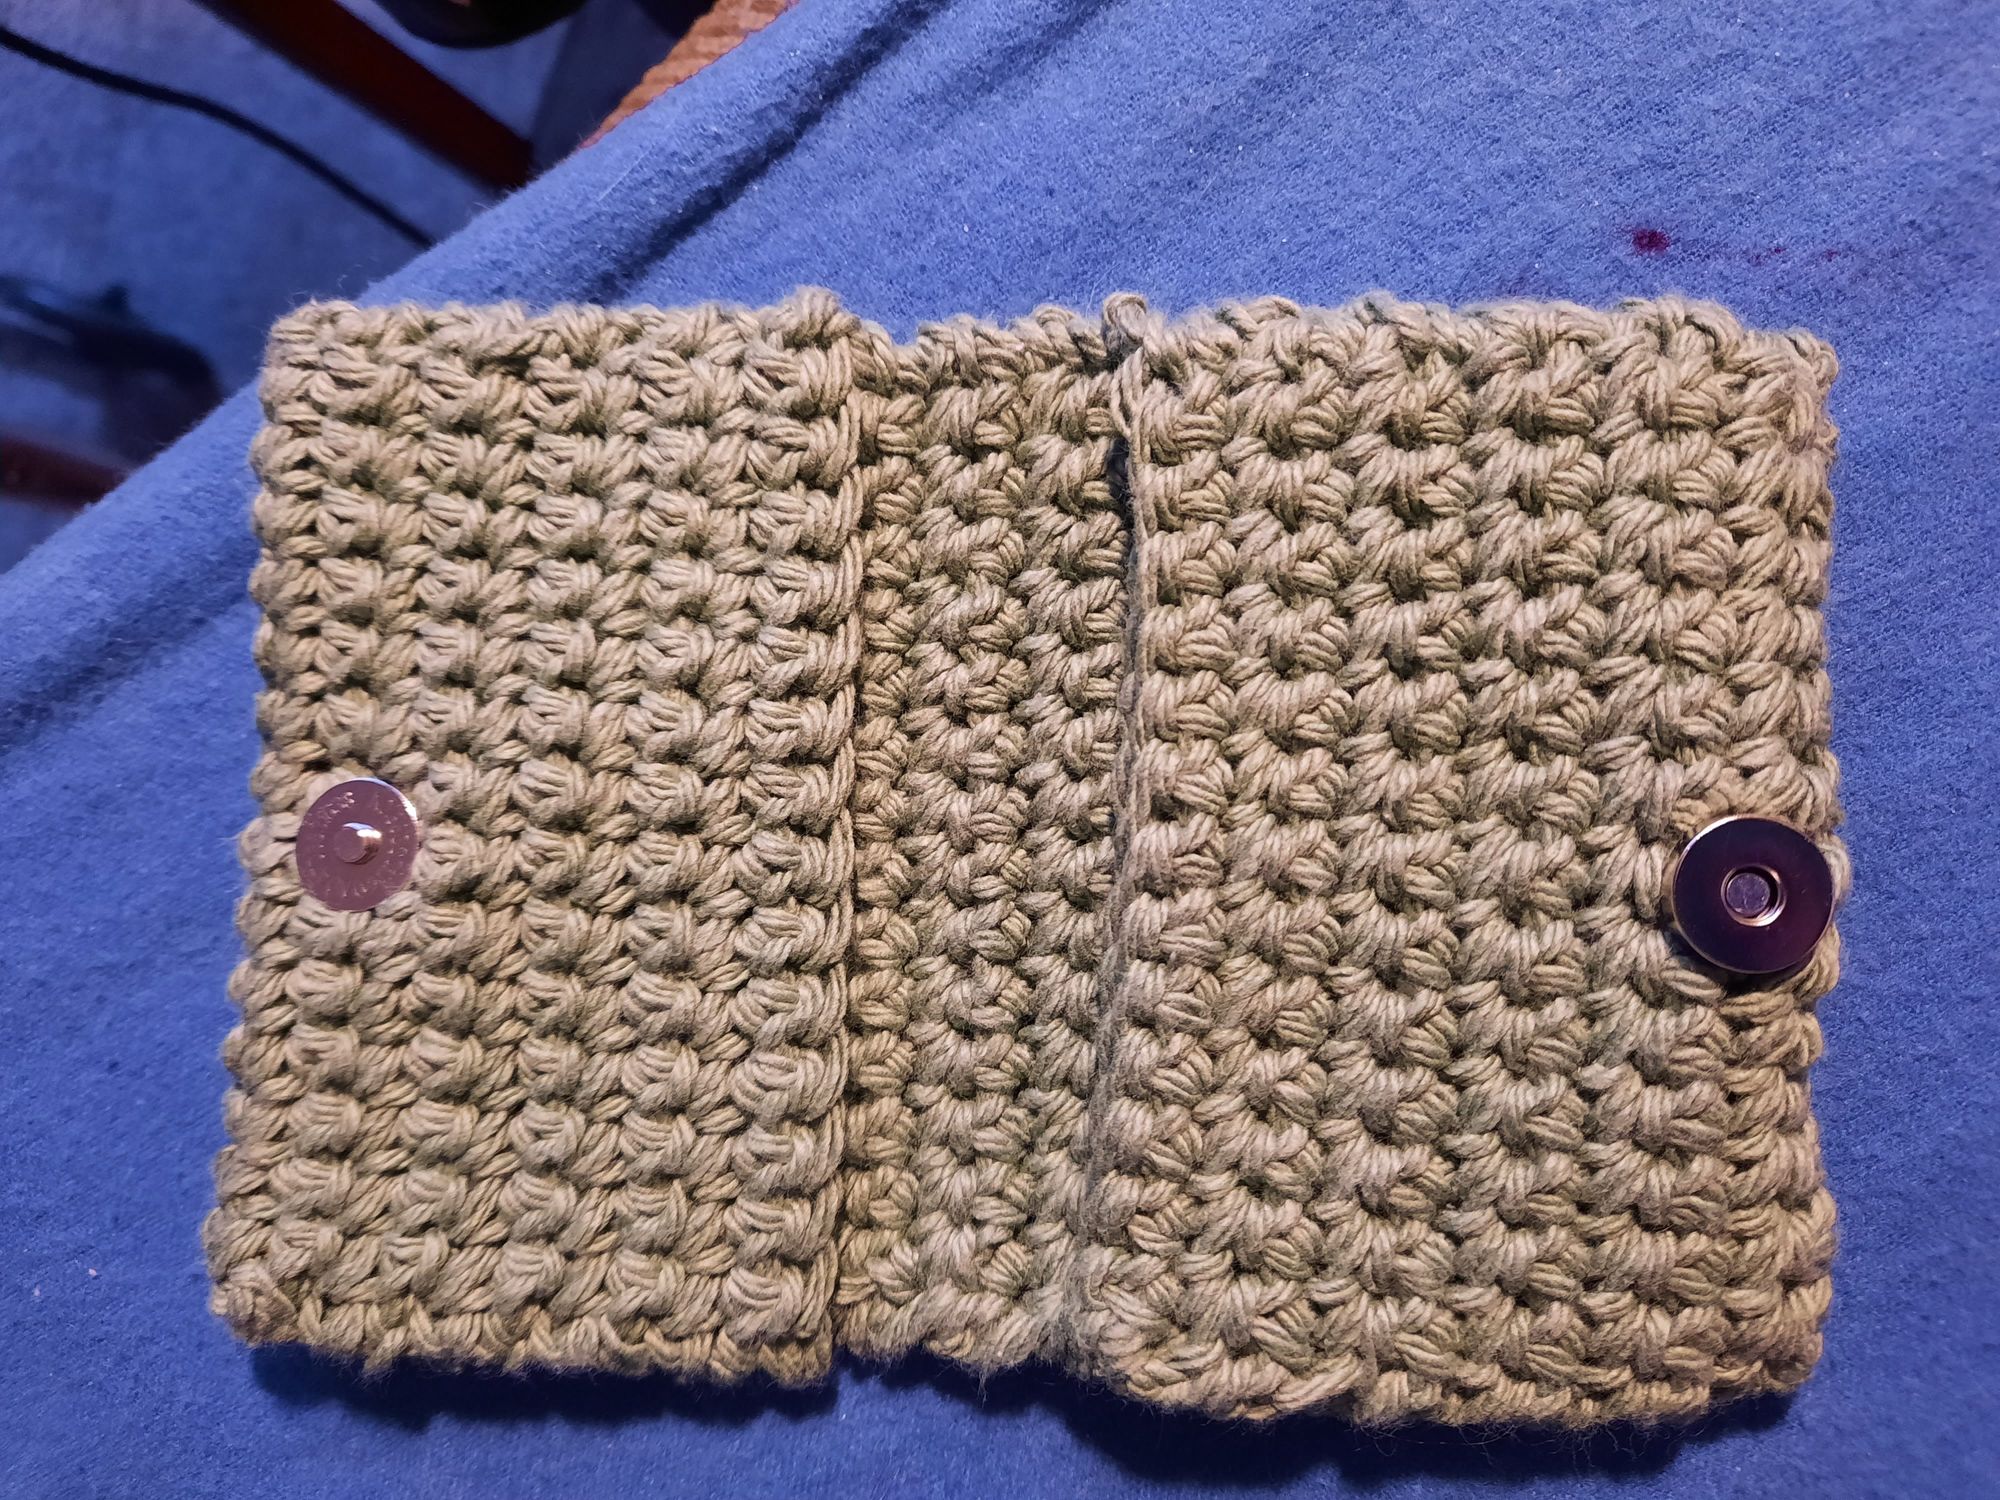 Crochet card holder, wallet